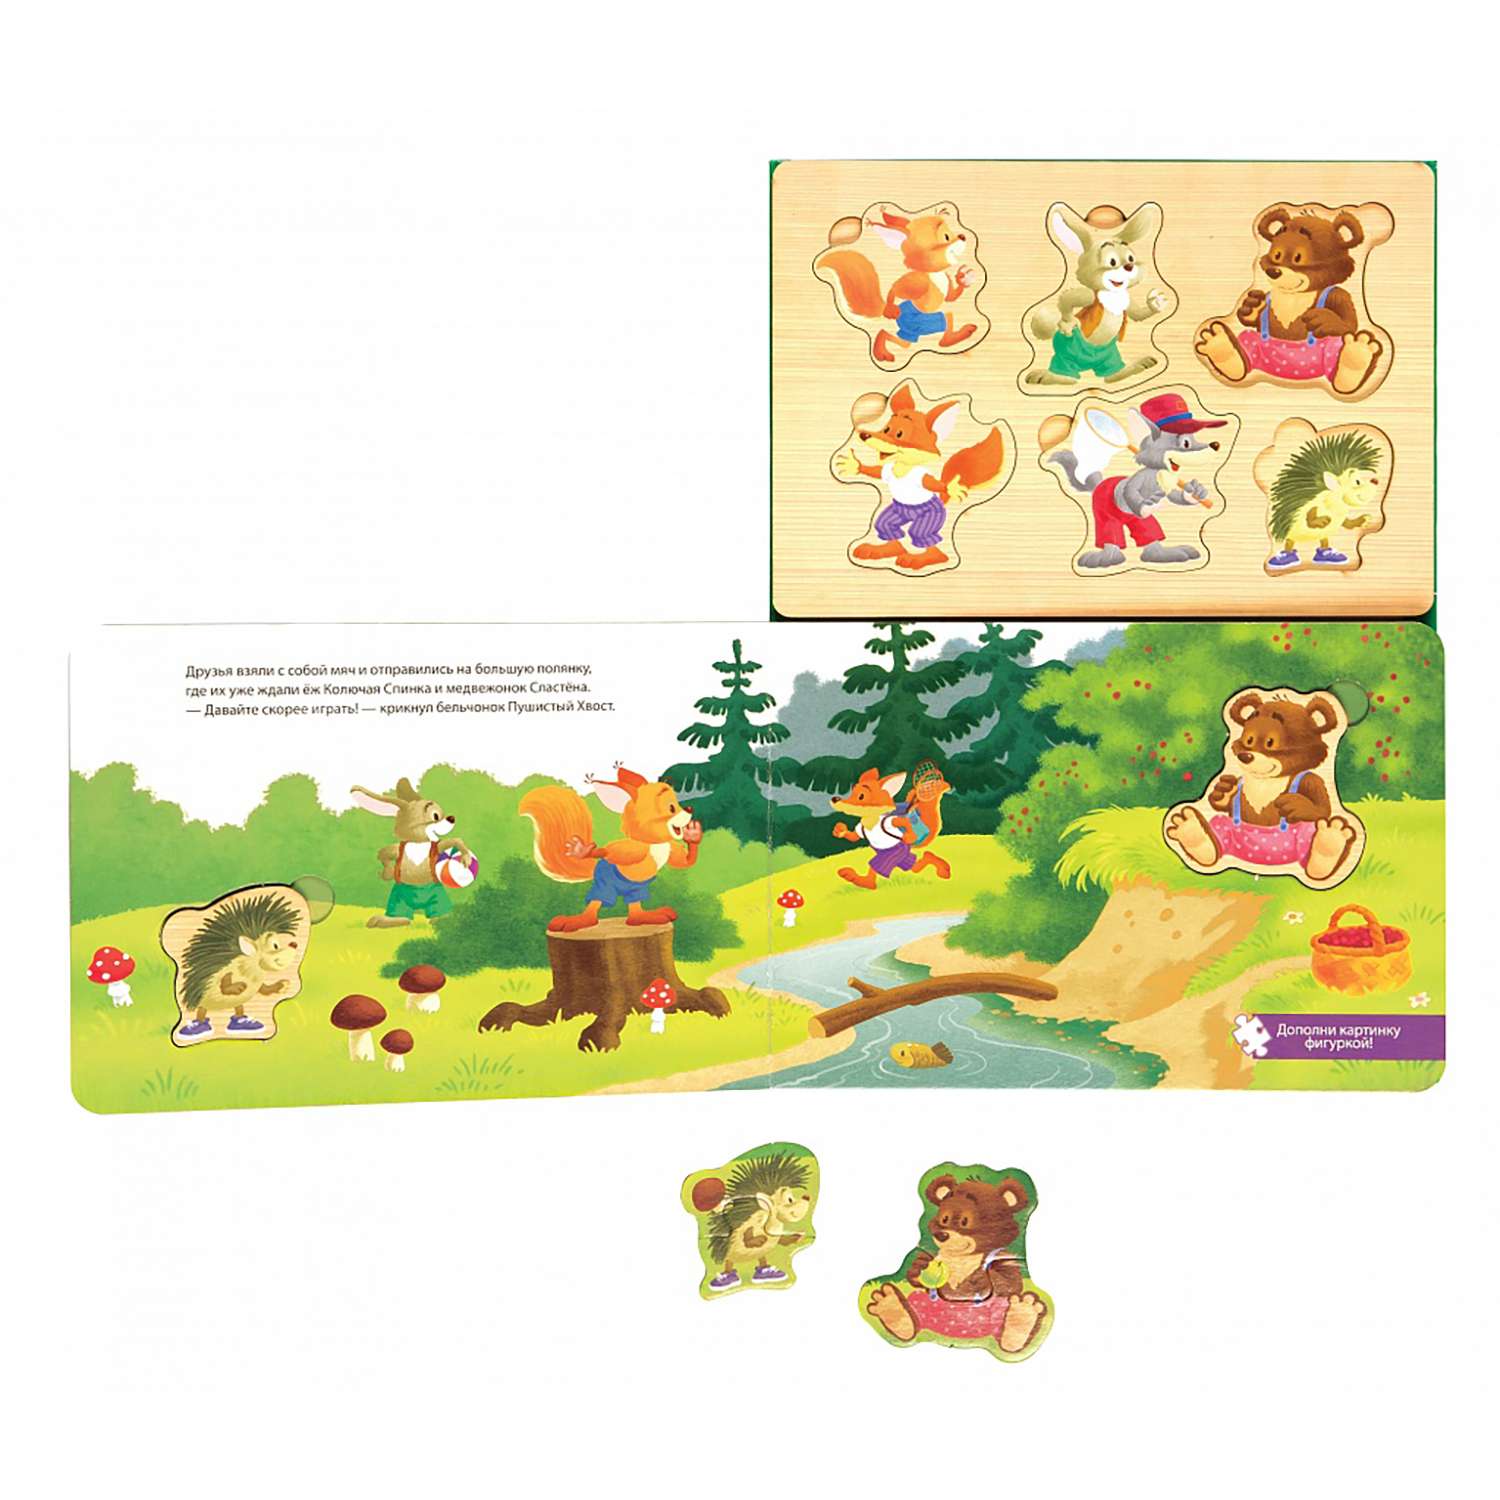 Книжка-игрушка Степ Пазл Лесные друзья бельчонка Волшебные странички - фото 2